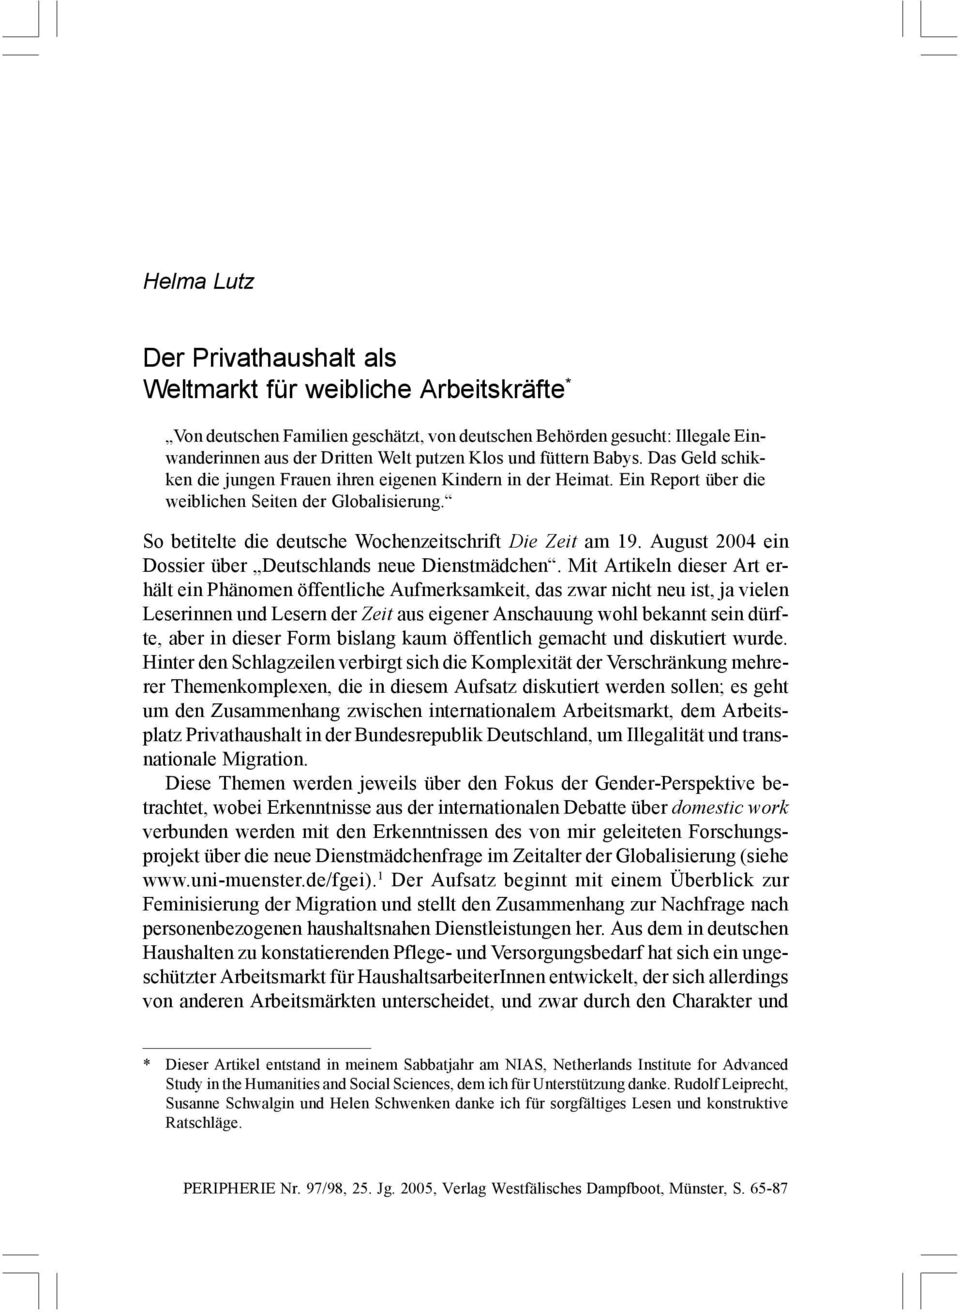 Ein Report über die weiblichen Seiten der Globalisierung. So betitelte die deutsche Wochenzeitschrift Die Zeit am 19. August 2004 ein Dossier über Deutschlands neue Dienstmädchen.